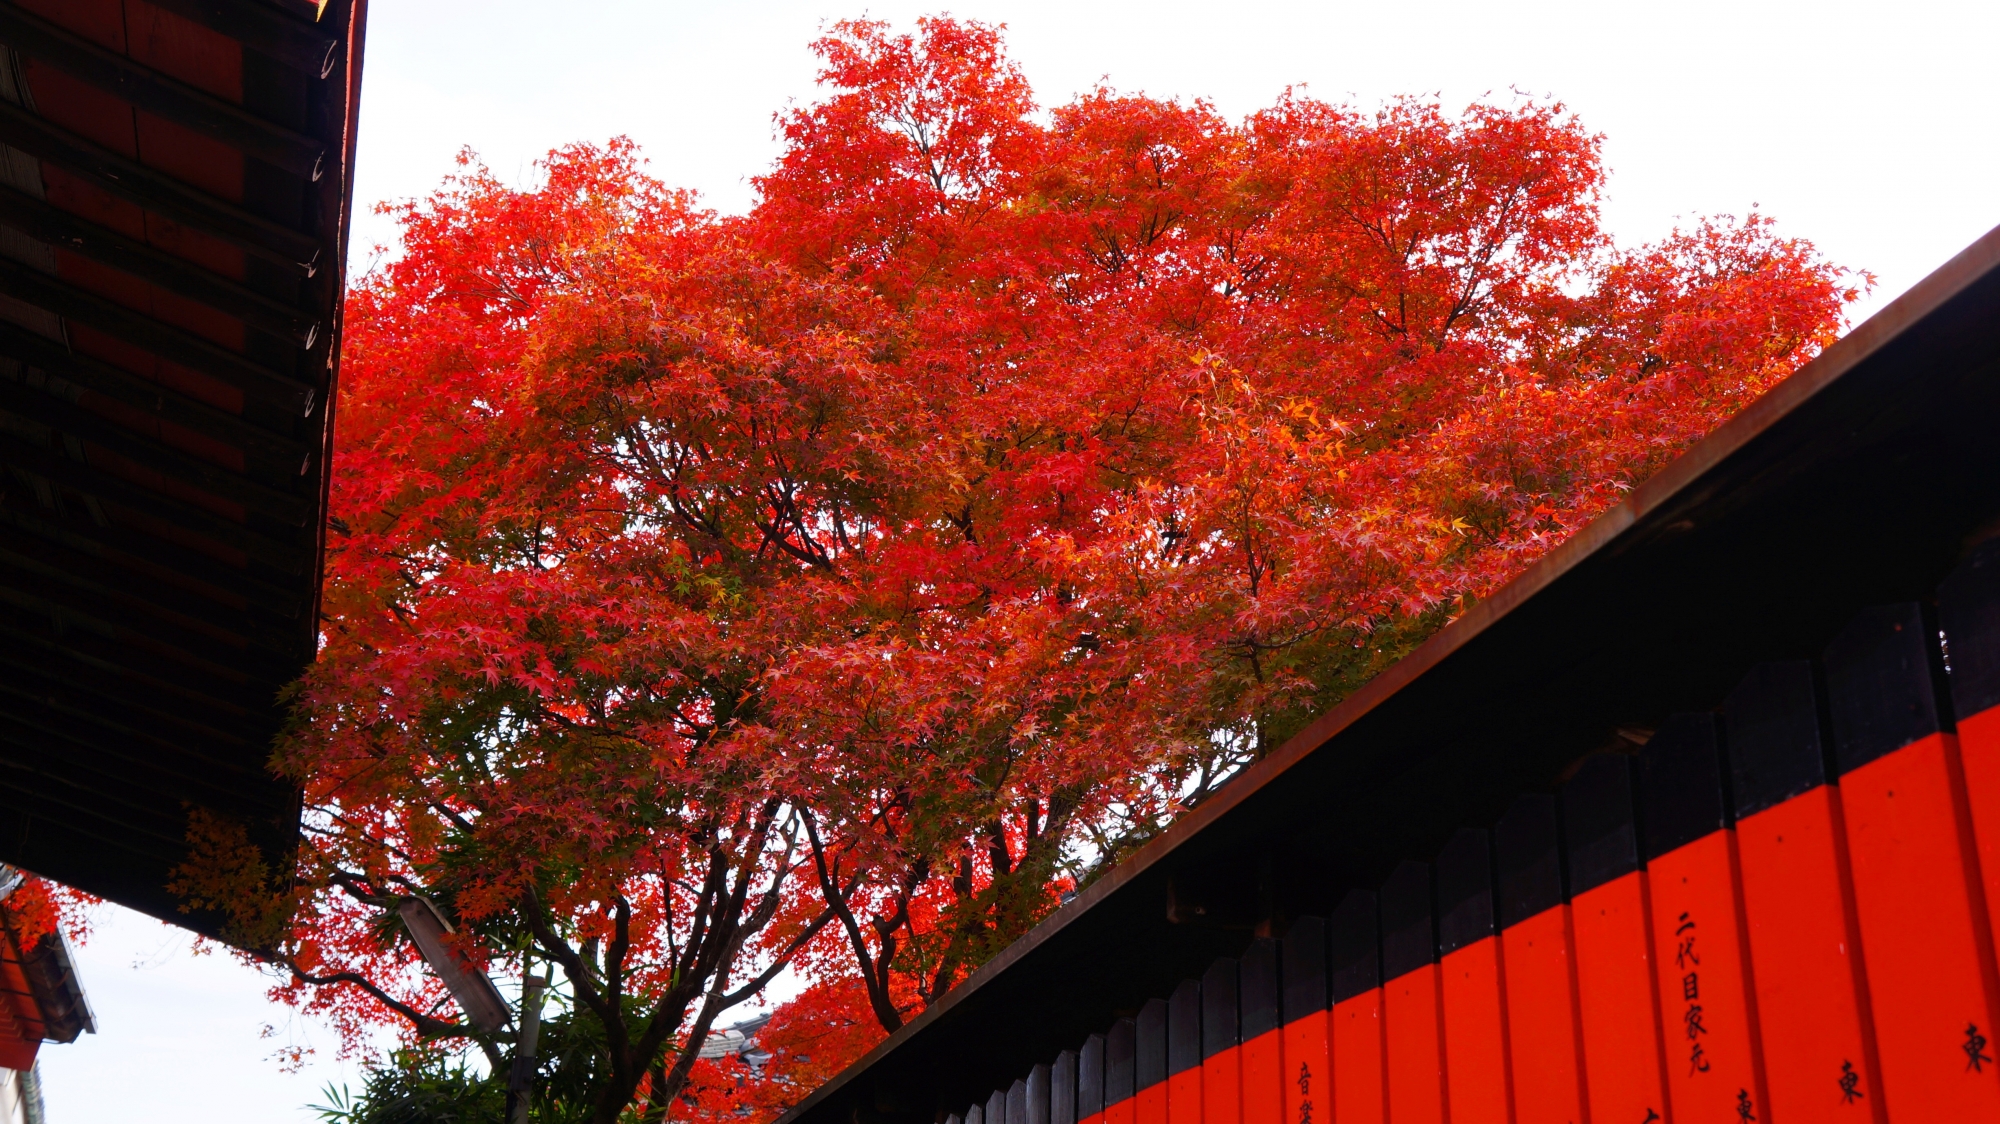 芸能神社の社殿や玉垣の間から見える真っ赤な紅葉